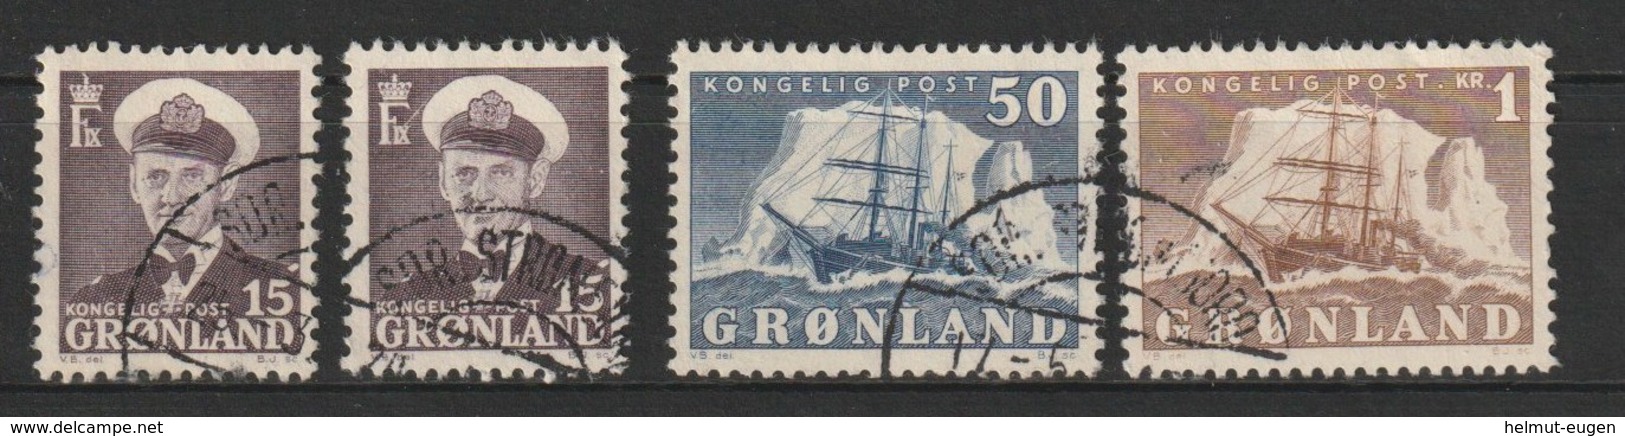 MiNr. 31. 31, 34, 35 Dänemark Grönland       1950, 15. Aug./1960. Freimarken: König Frederik IX. Und Arktisschiff. - Gebraucht